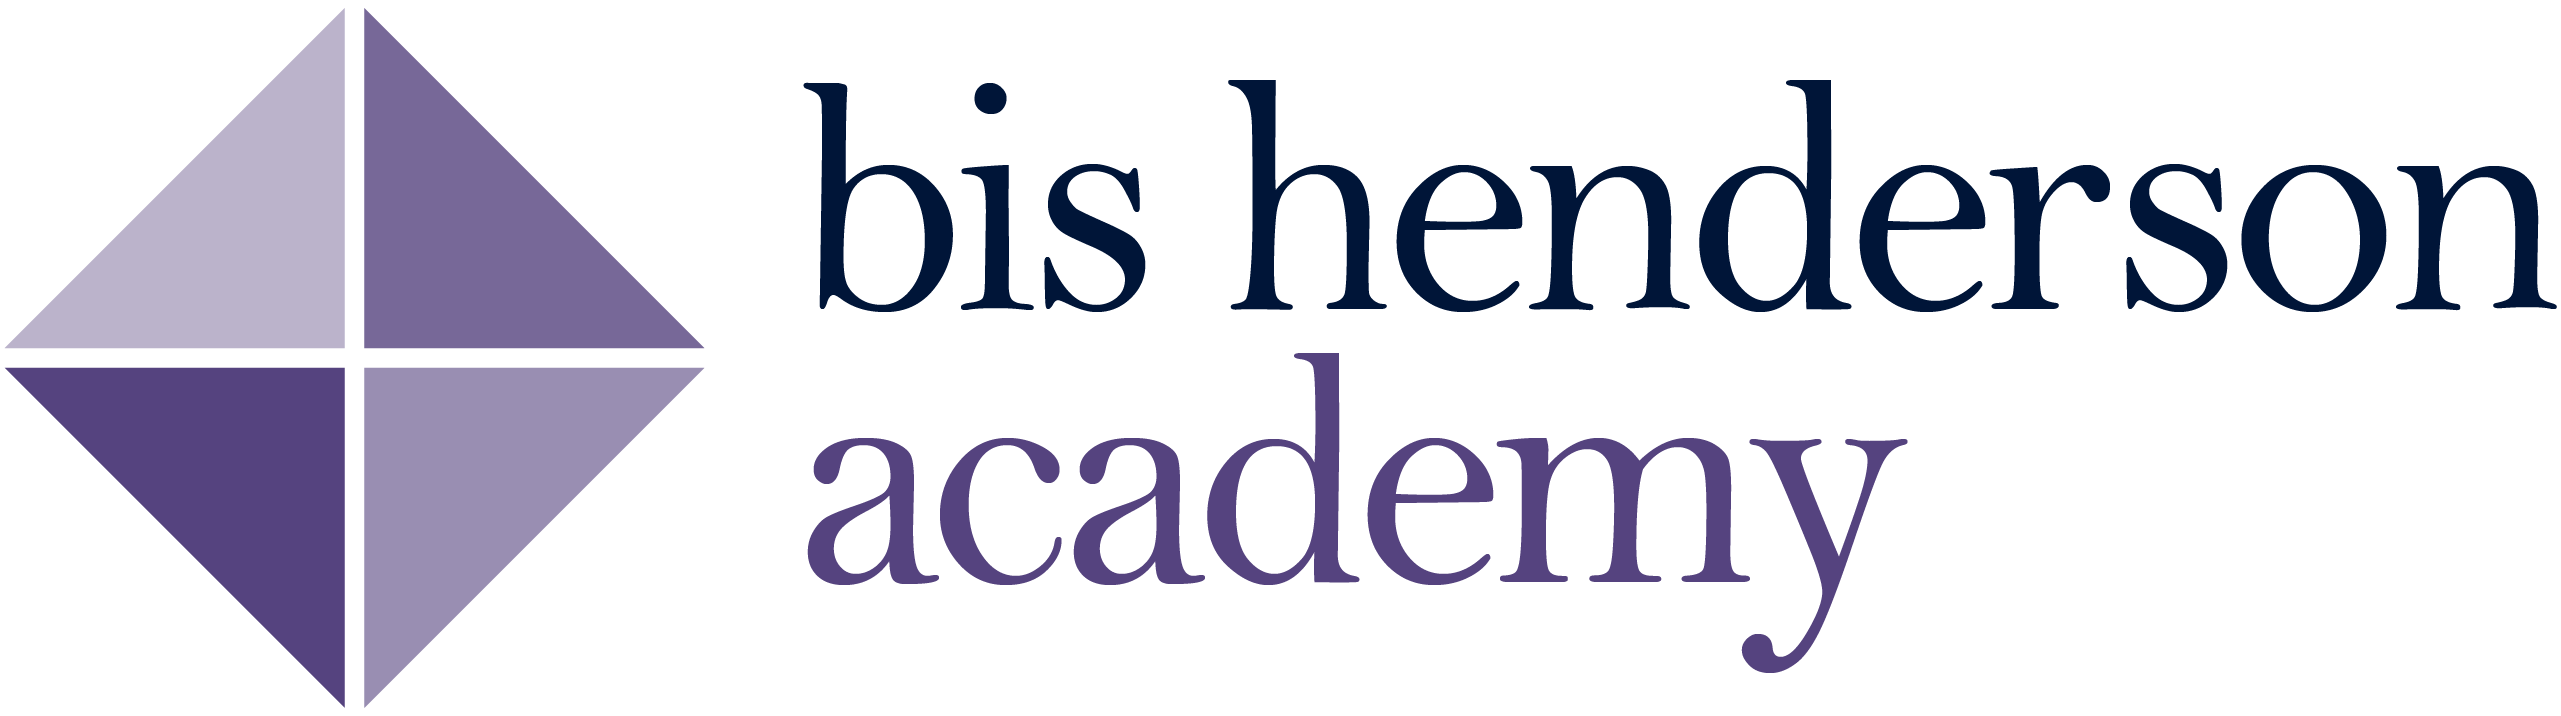 Bis-Henderson Academy Logo